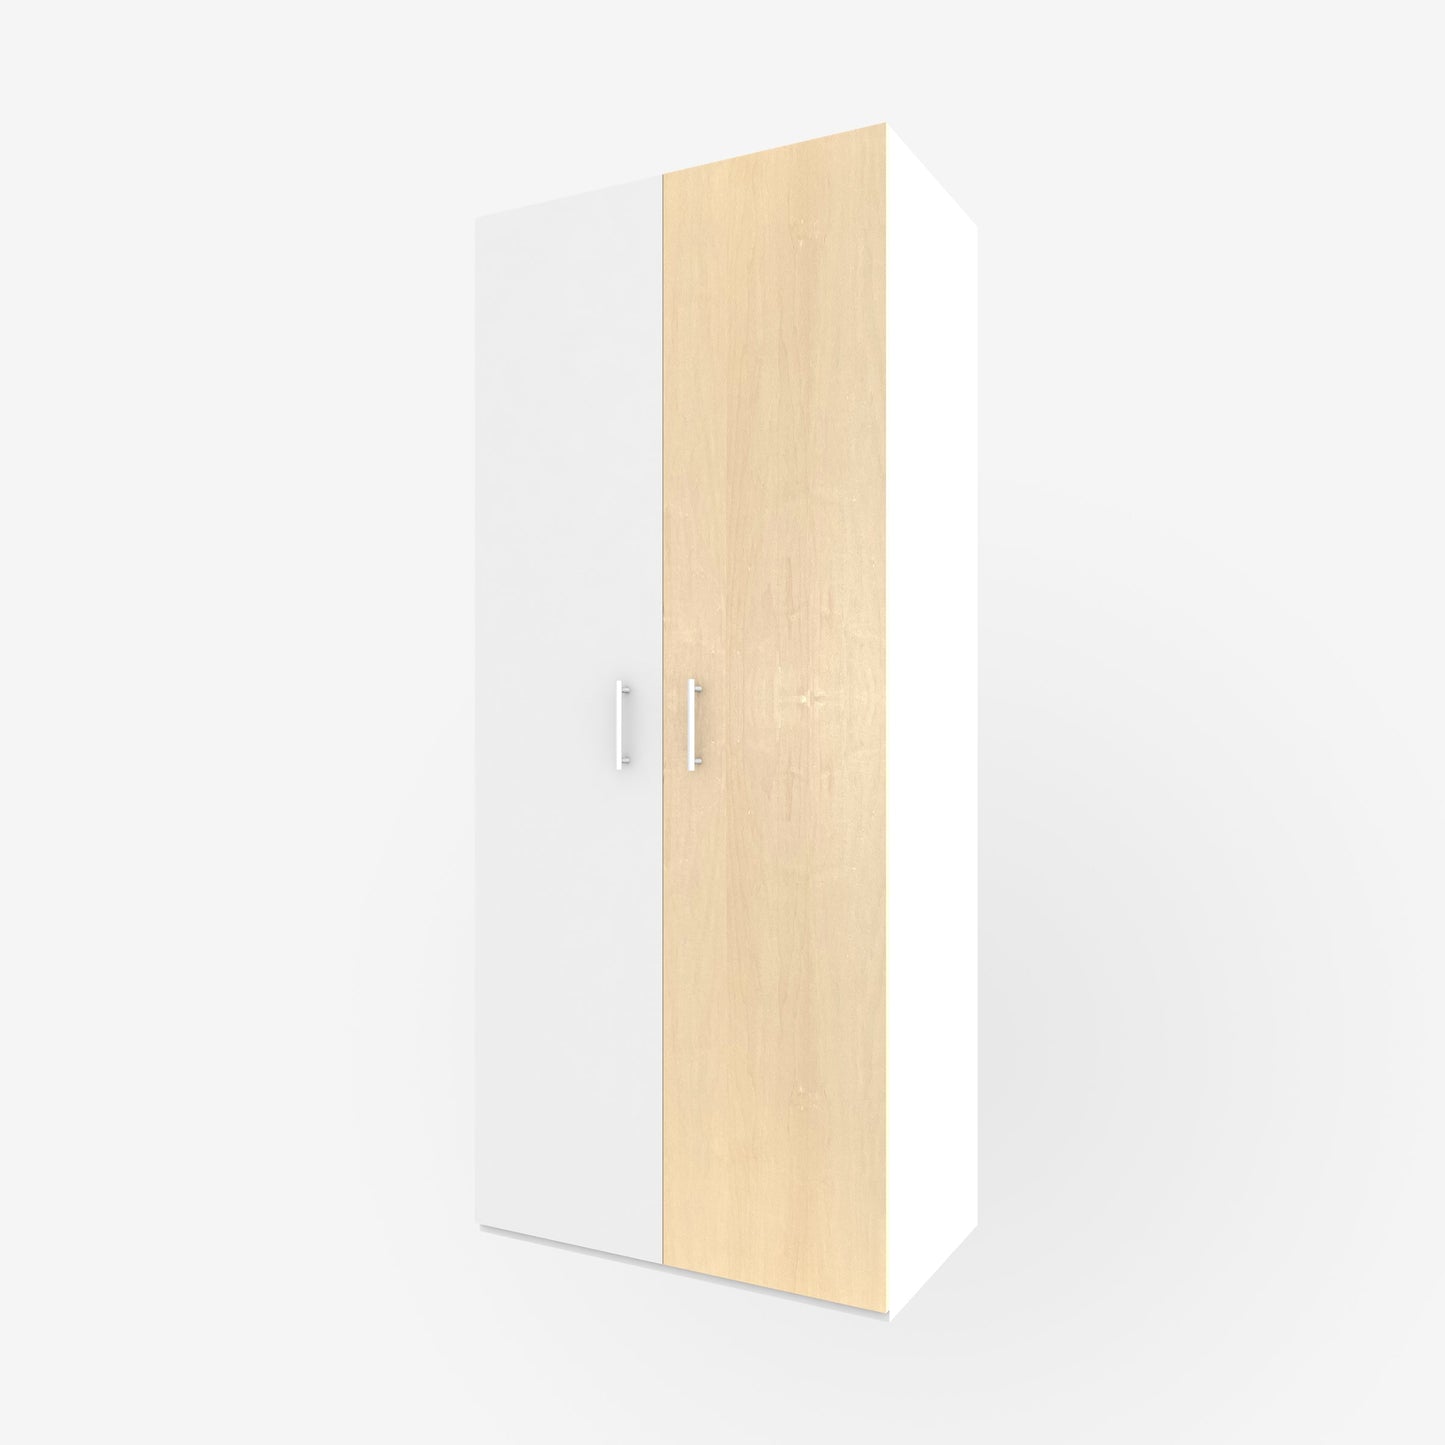 19.5" x 93" real wood veneer maple slab door for Ikea or Swedeboxx pax closet cabinet